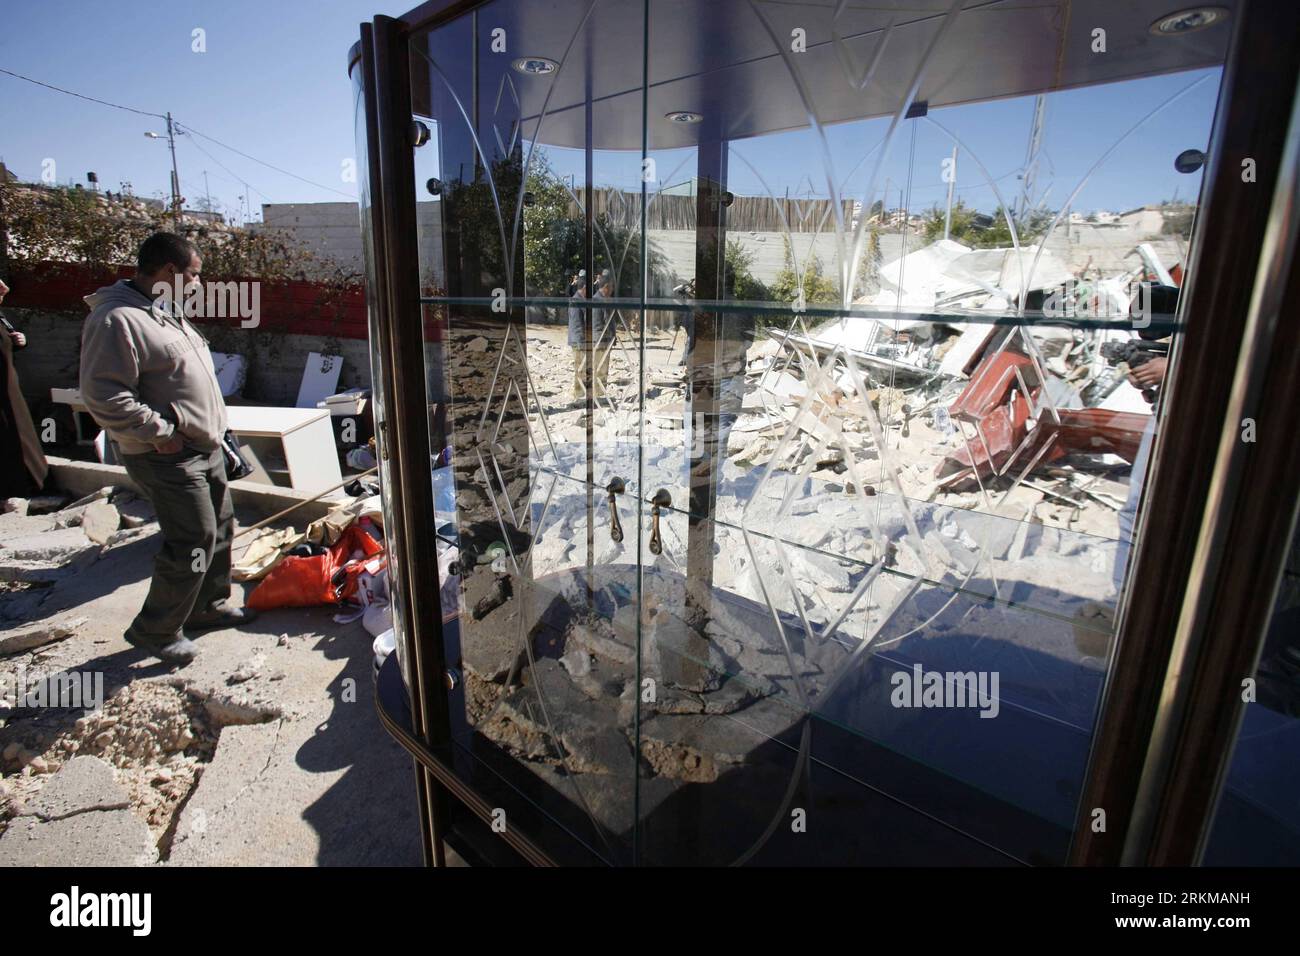 Bildnummer: 56635376 Datum: 05.12.2011 Copyright: imago/Xinhua (111205) -- JERUSALEM, 5. Dezember 2011 (Xinhua) -- Ein Palästinenser steht auf dem Schutt eines Hauses, nachdem es von Israelis nach einem israelischen Regierungsbefehl in Ost-Jerusalems Stadtteil Beit Hanina am 5. Dezember 2011 zerstört wurde. (Xinhua/Muammar Awad) MIDEAST-JERUSALEM-ABRISS PUBLICATIONxNOTxINxCHN Gesellschaft Ostjerusalem Ost Palästinenser Abriss Wohnhaus xbs x0x 2011 quer Premiere 56635376 Datum 05 12 2011 Copyright Imago XINHUA Jerusalem DEC 5 2011 XINHUA ein PALÄSTINENSISCHER Mann steht AUF dem SCHUTT eines Hauses danach was Stockfoto